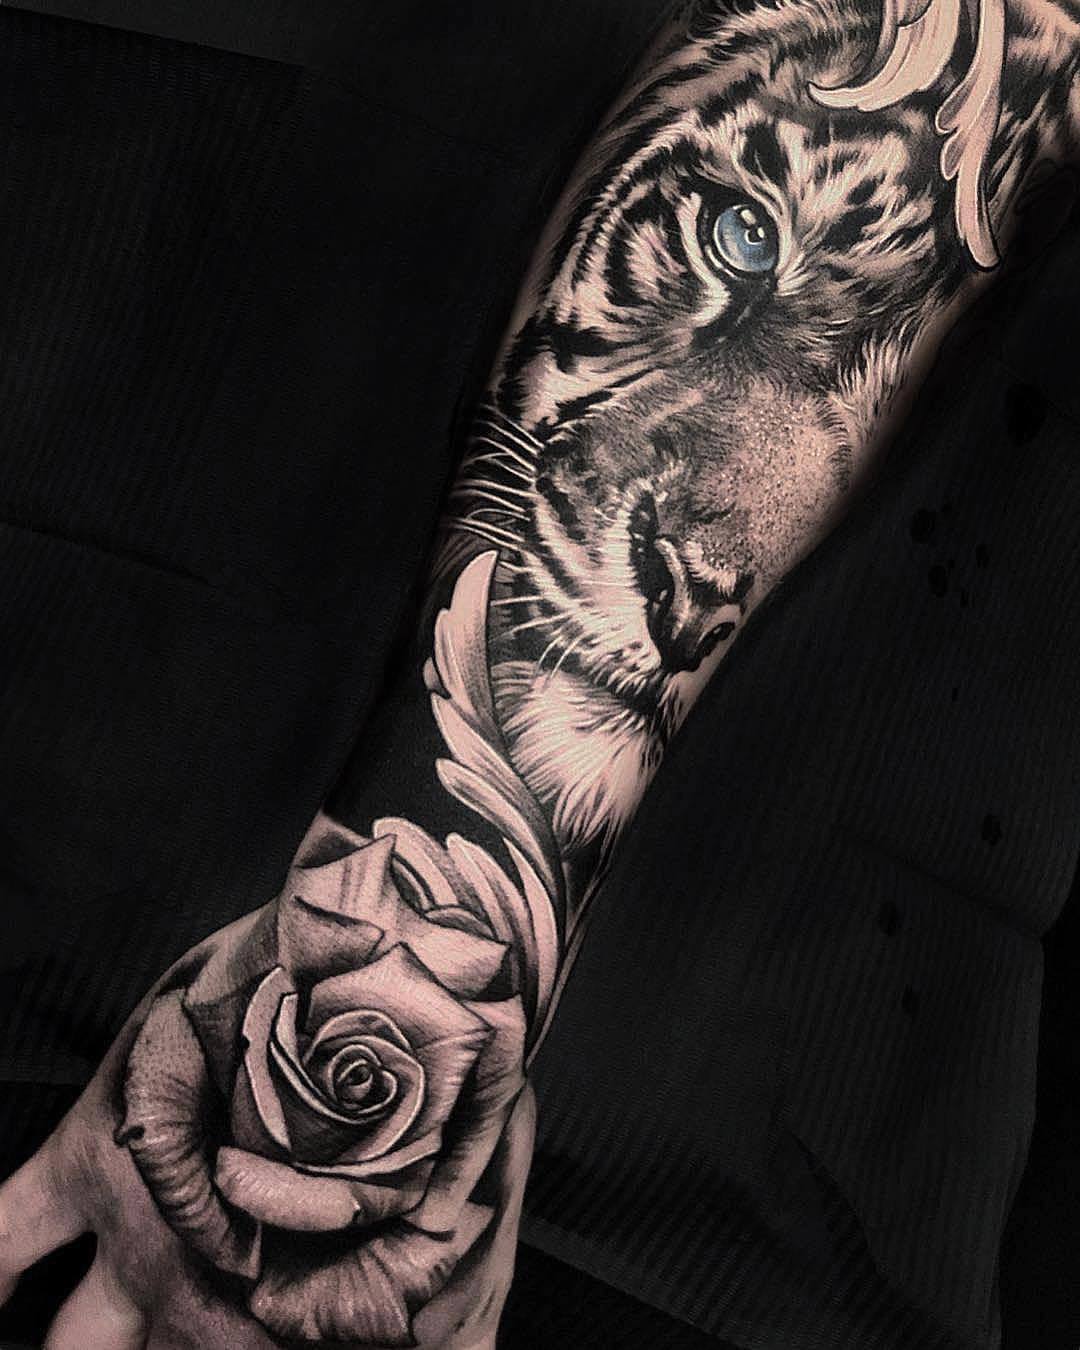 15 Best Tiger and Rose Tattoo Designs  PetPress  Tiger tattoo sleeve  Tiger forearm tattoo Animal sleeve tattoo